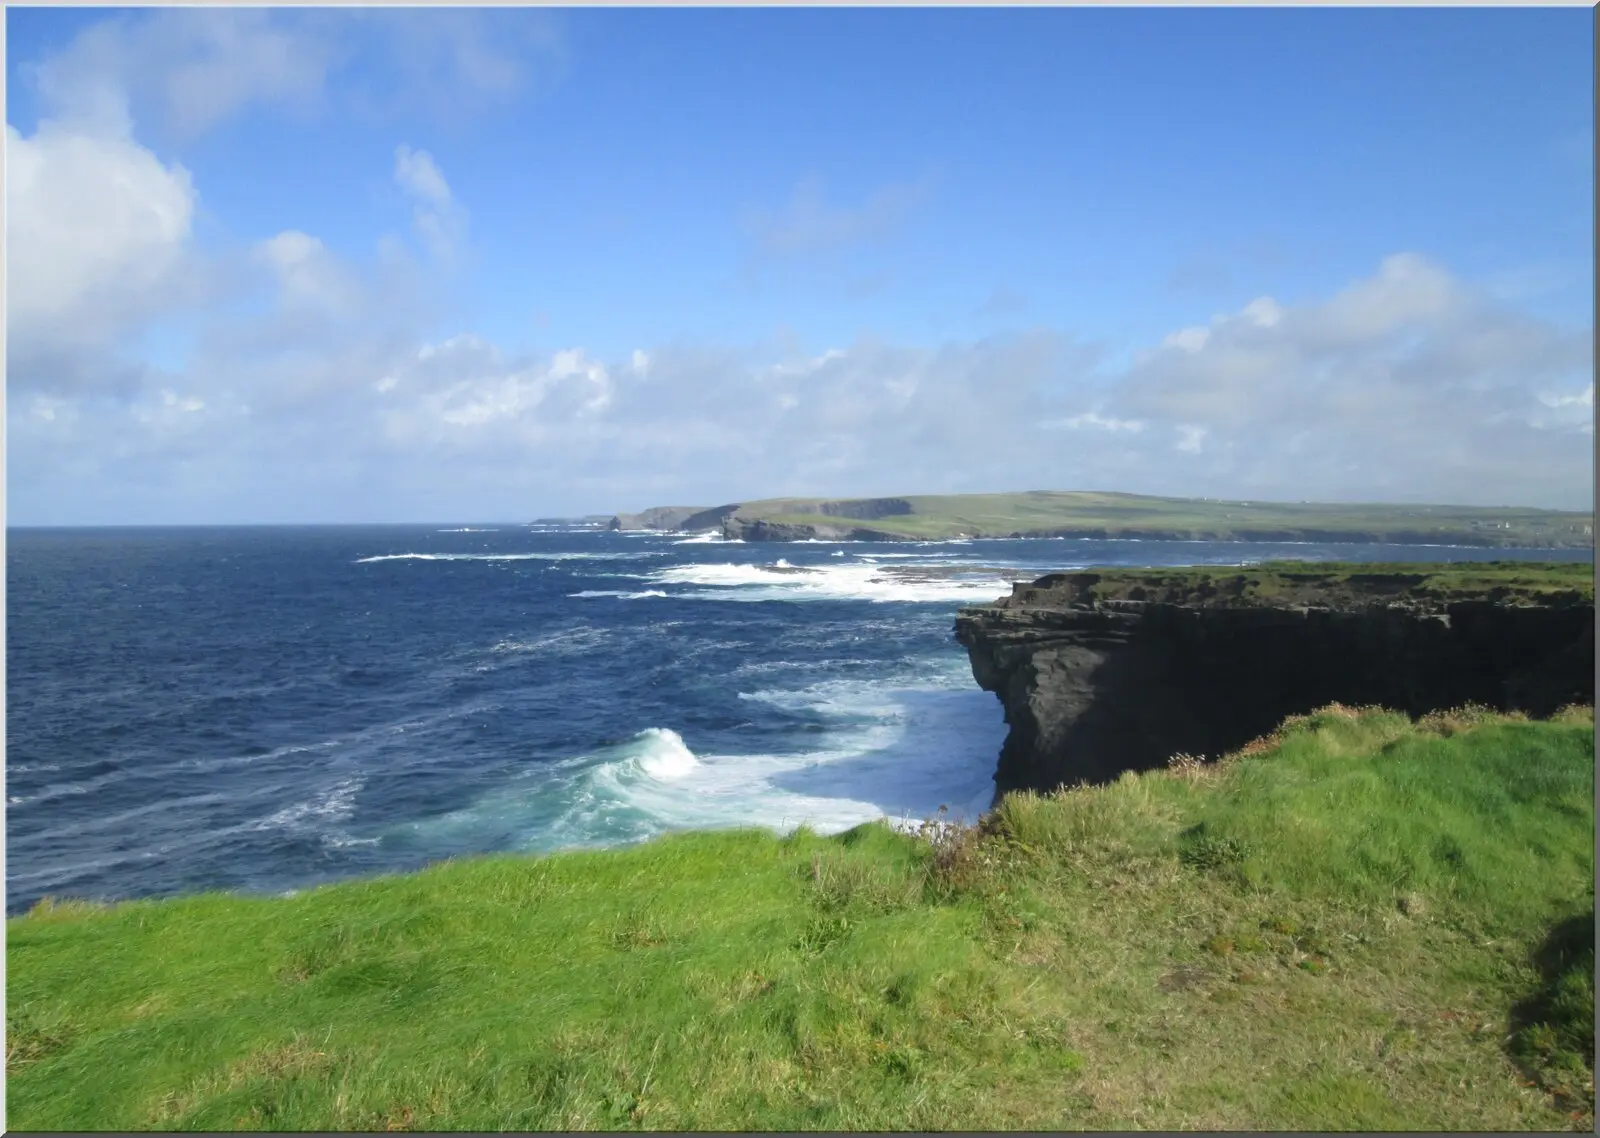 Küste irgendwo in Irland wunderschönes Postkartenmotiv